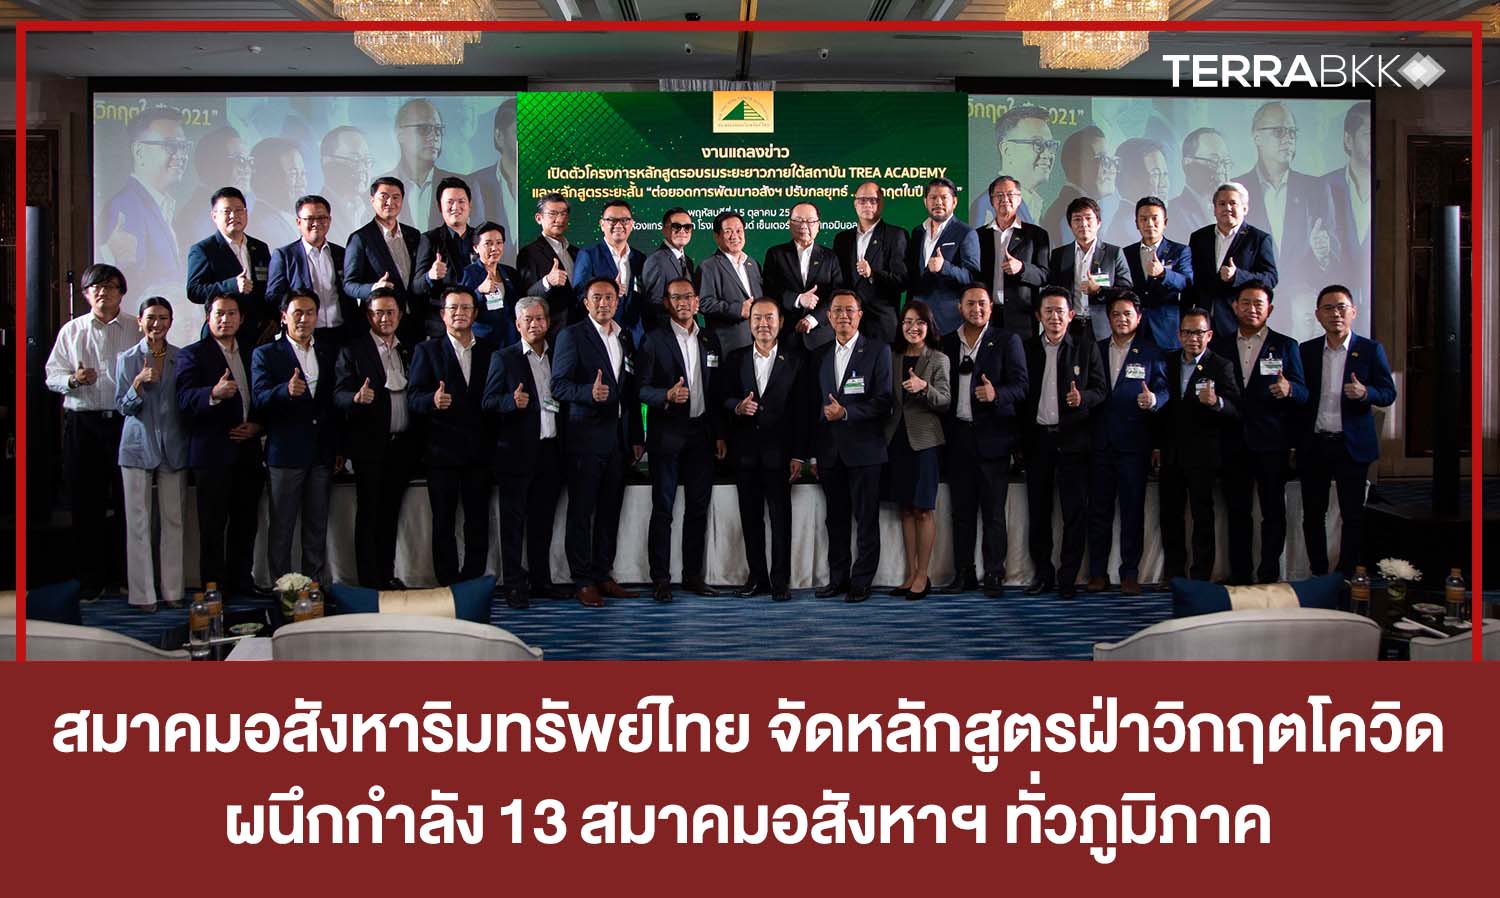 สมาคมอสังหาริมทรัพย์ไทย จัดหลักสูตรปรับกลยุทธ์ธุรกิจฝ่าวิกฤตโควิด  ผนึกกำลัง 13 สมาคมอสังหาฯ ทั่วภูมิภาค  เปิดตลาดอสังหาฯ ออนไลน์ “อสังหาฯ มาร์เก็ต เพลส”